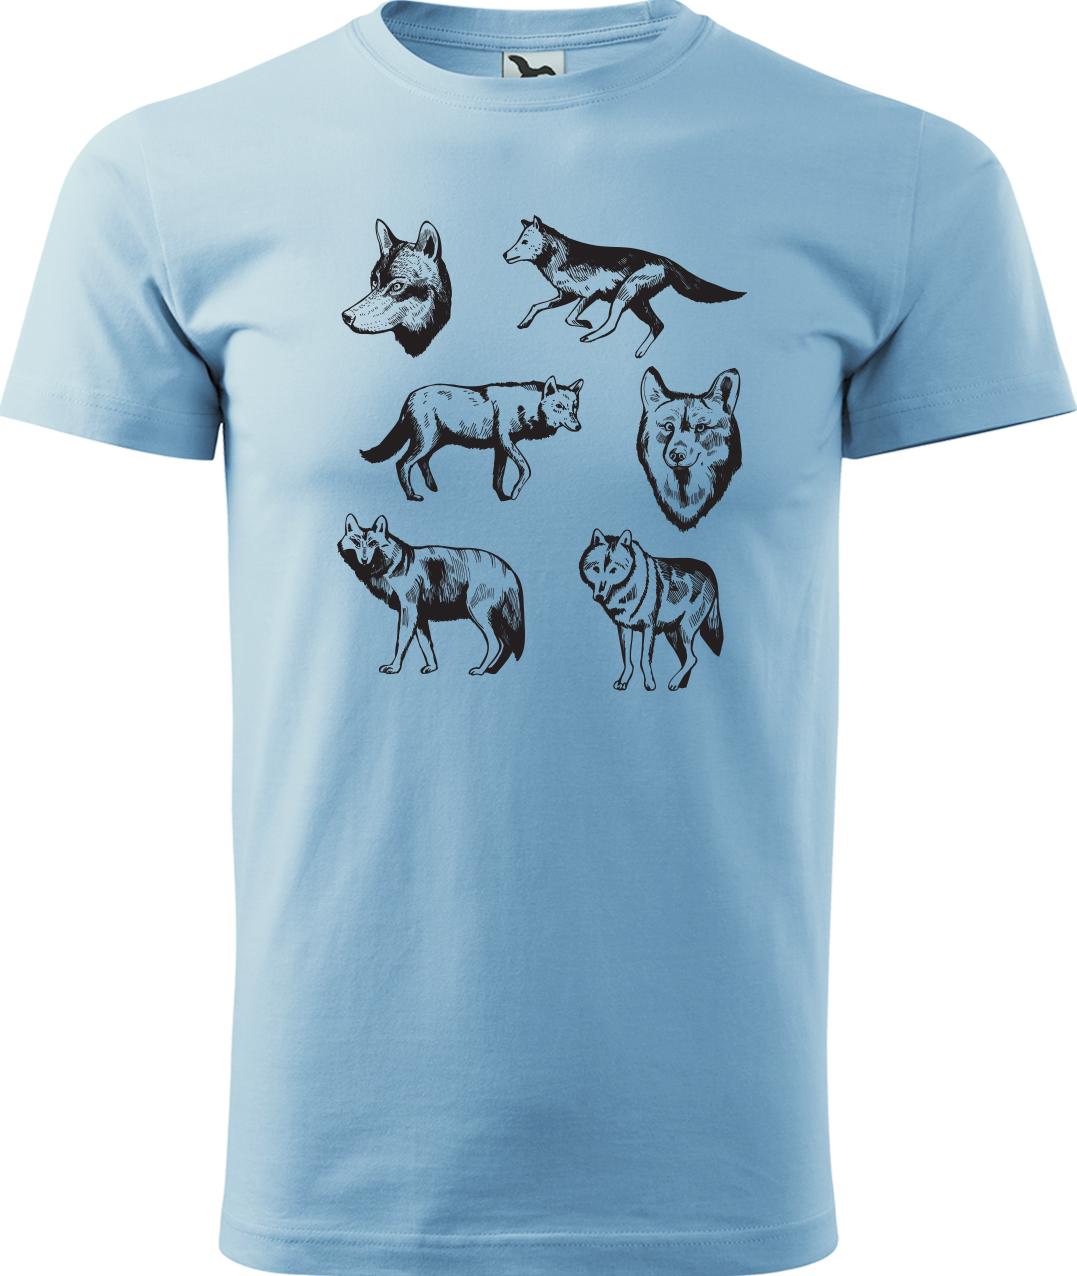 Pánské tričko s vlkem - Vlci Velikost: S, Barva: Nebesky modrá (15), Střih: pánský